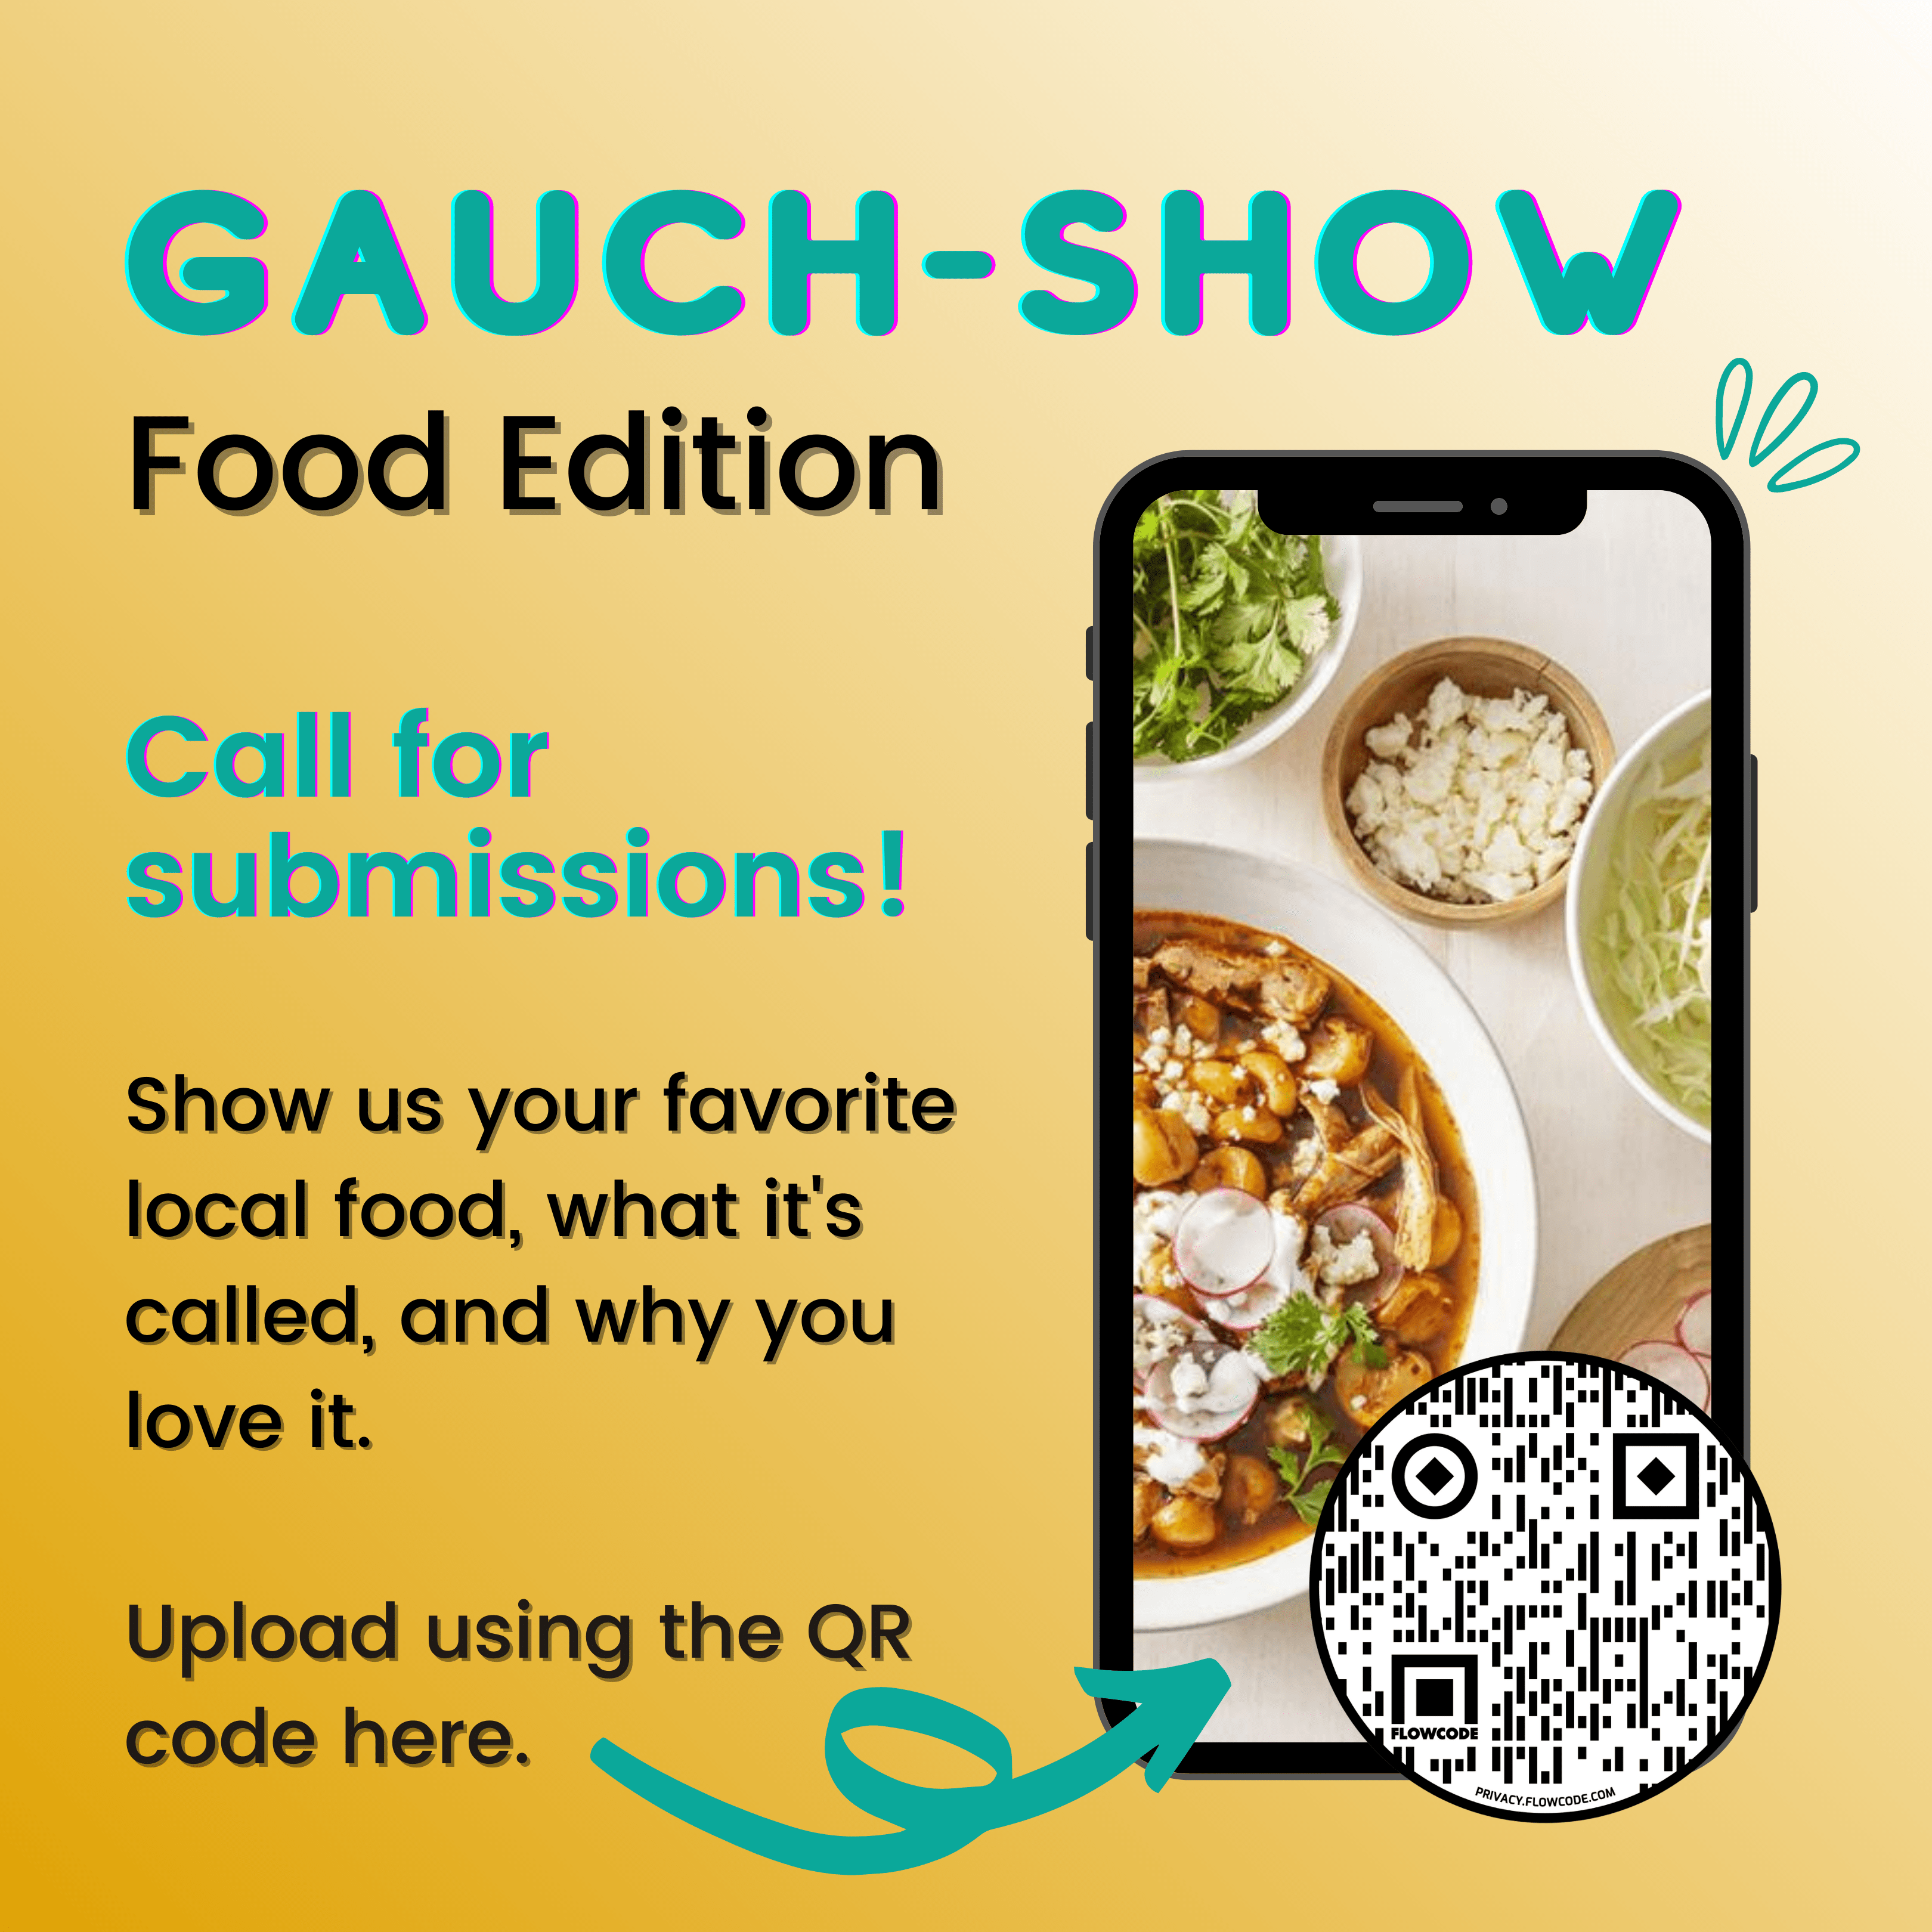 Gauch-Show Food Edition